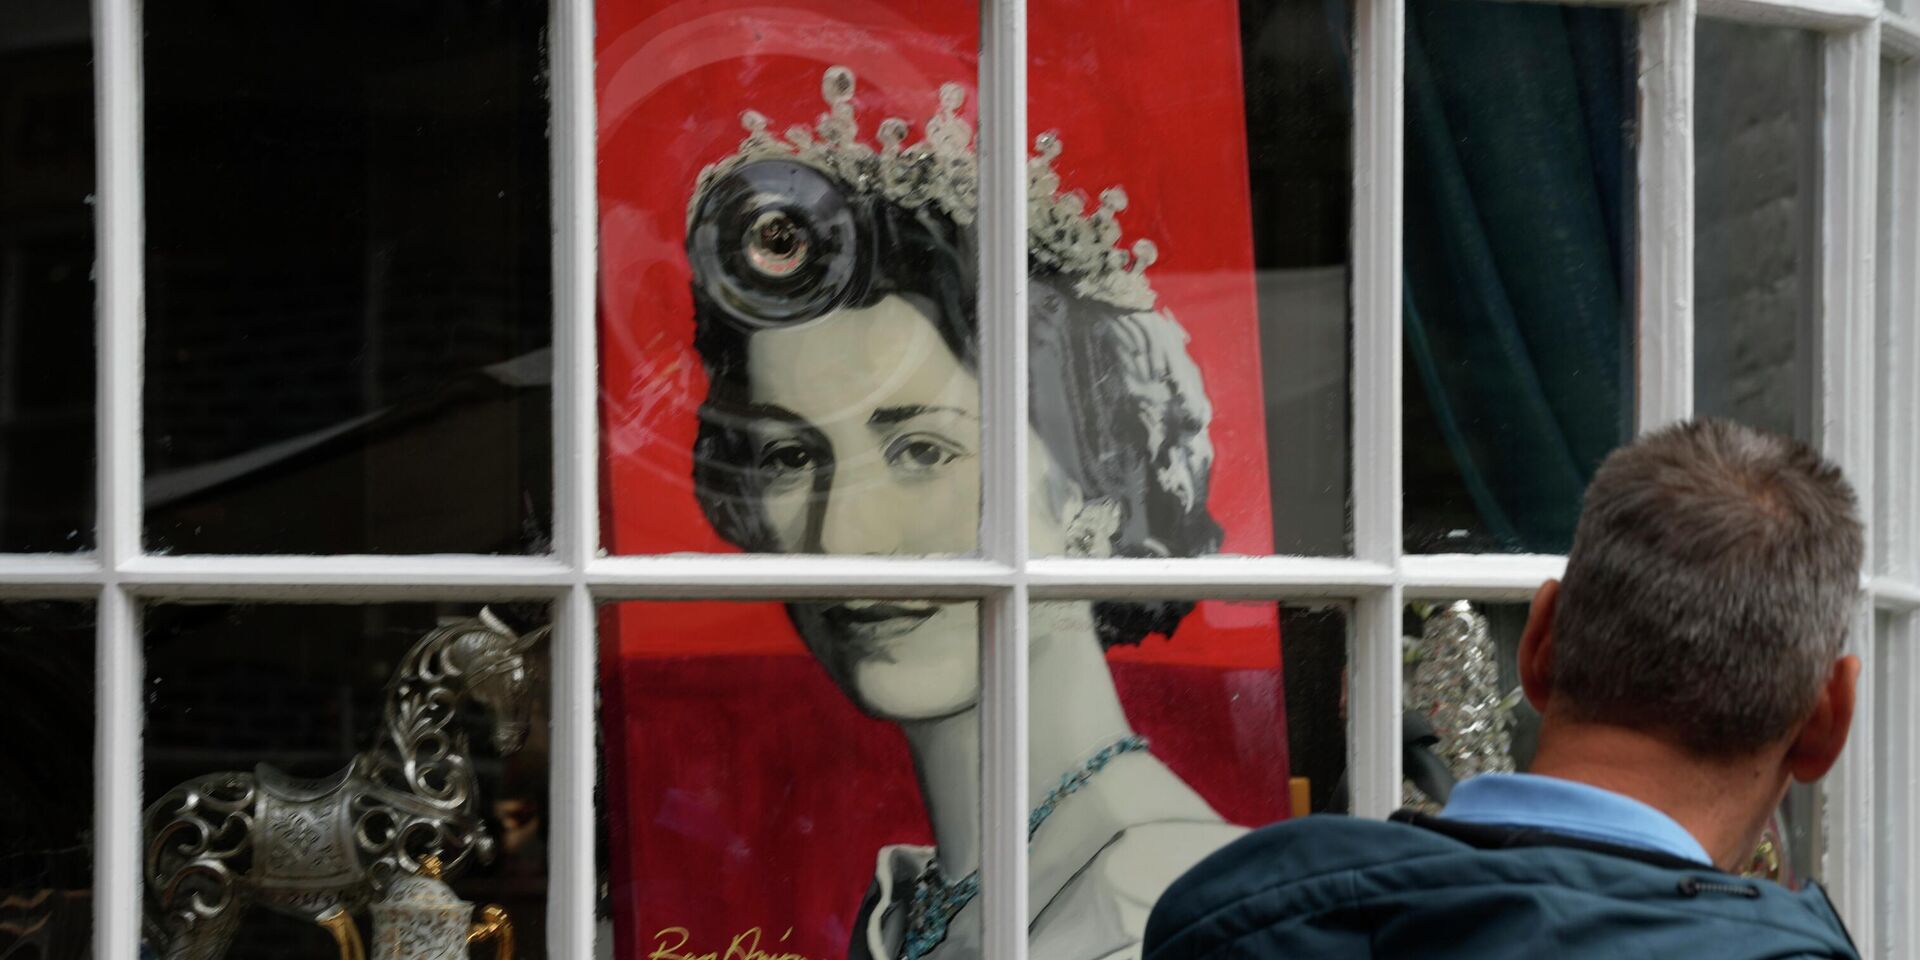 Портрет королевы Великобритании Елизаветы II в витрине магазина в Виндзоре. 9 сентября 2022 года. - ИноСМИ, 1920, 09.09.2022